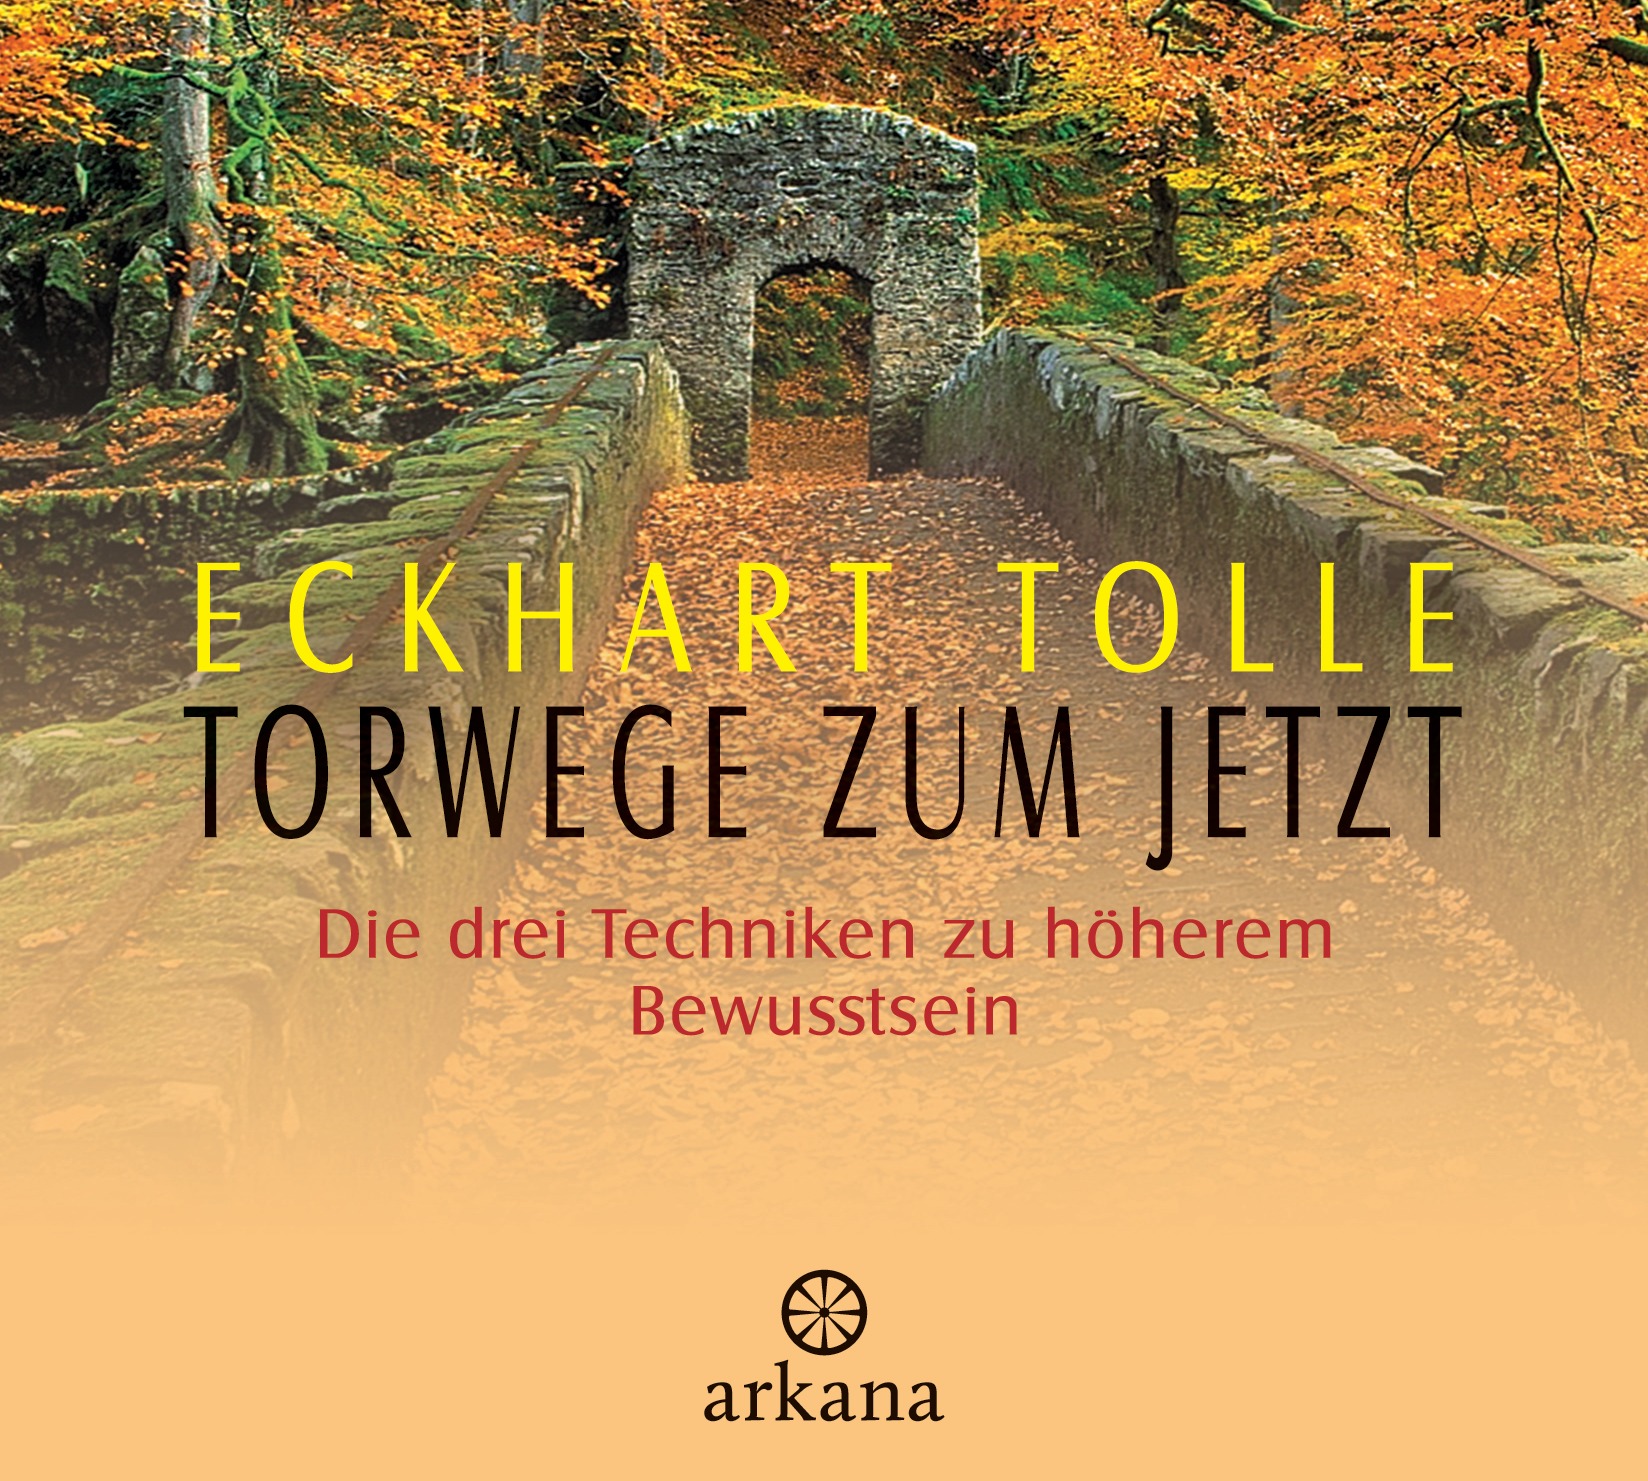 NEU Torwege zum Jetzt Eckhart Tolle 339006 - 第 1/1 張圖片